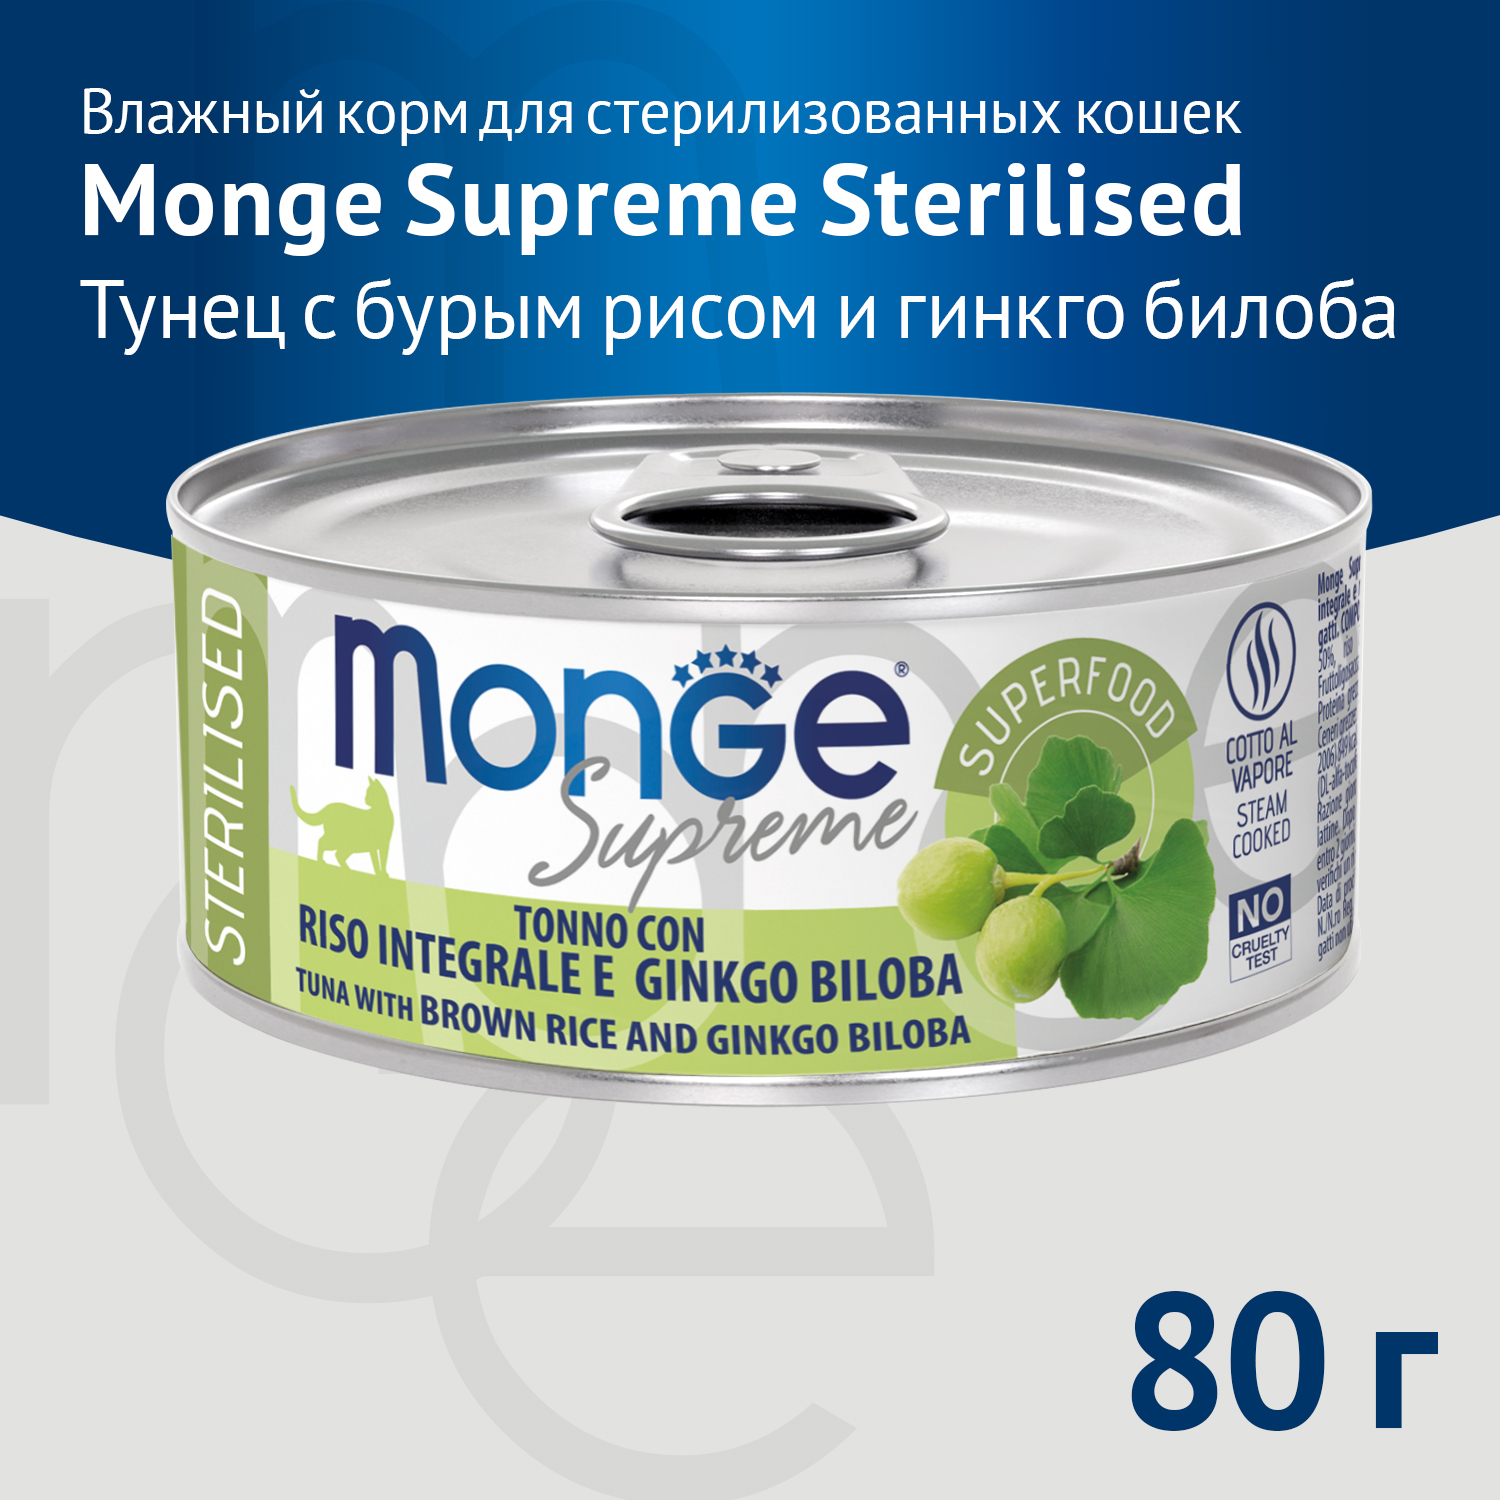 Влажный корм Monge Supreme sterilized для стерилизованных кошек из тунца с бурым рисом и гинкго билоба, консервы 80 г